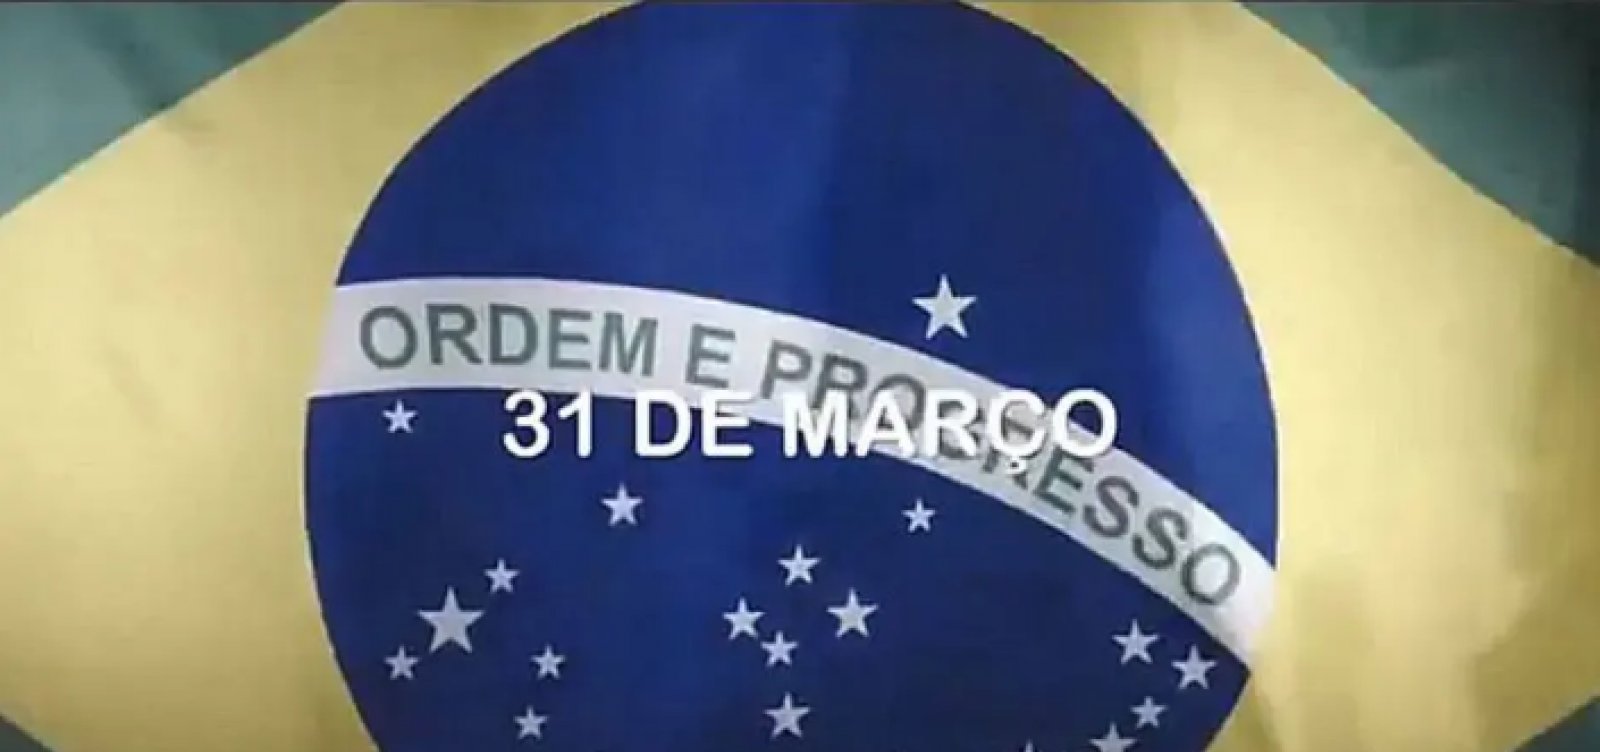 Planalto divulga vídeo em defesa do golpe militar de 64